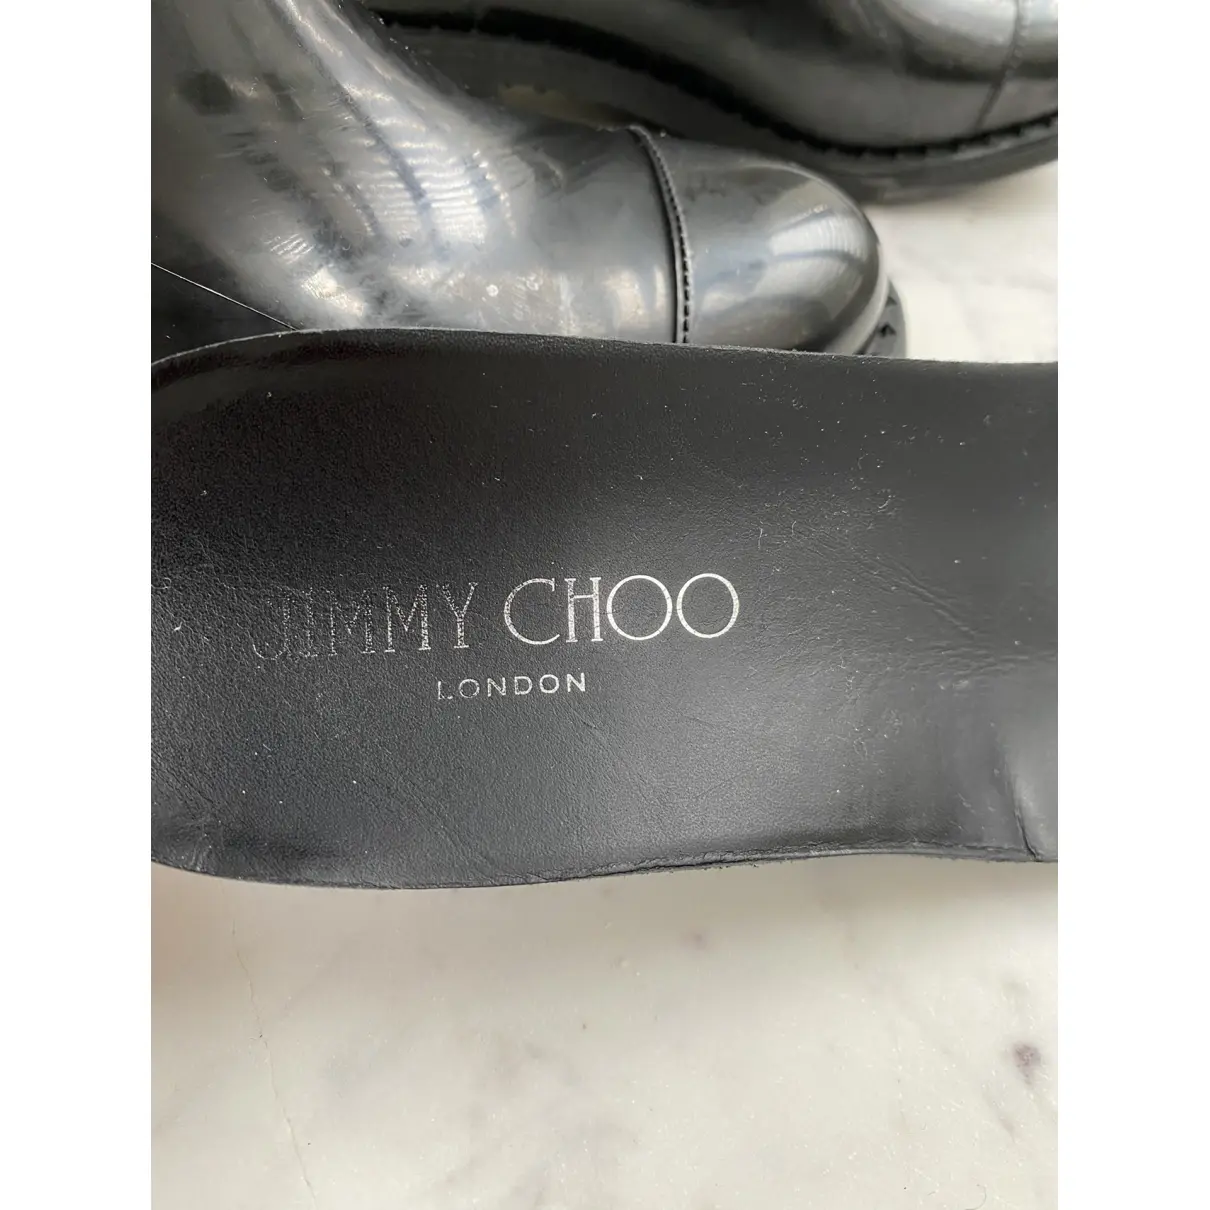 Buy Jimmy Choo Wellington boots online